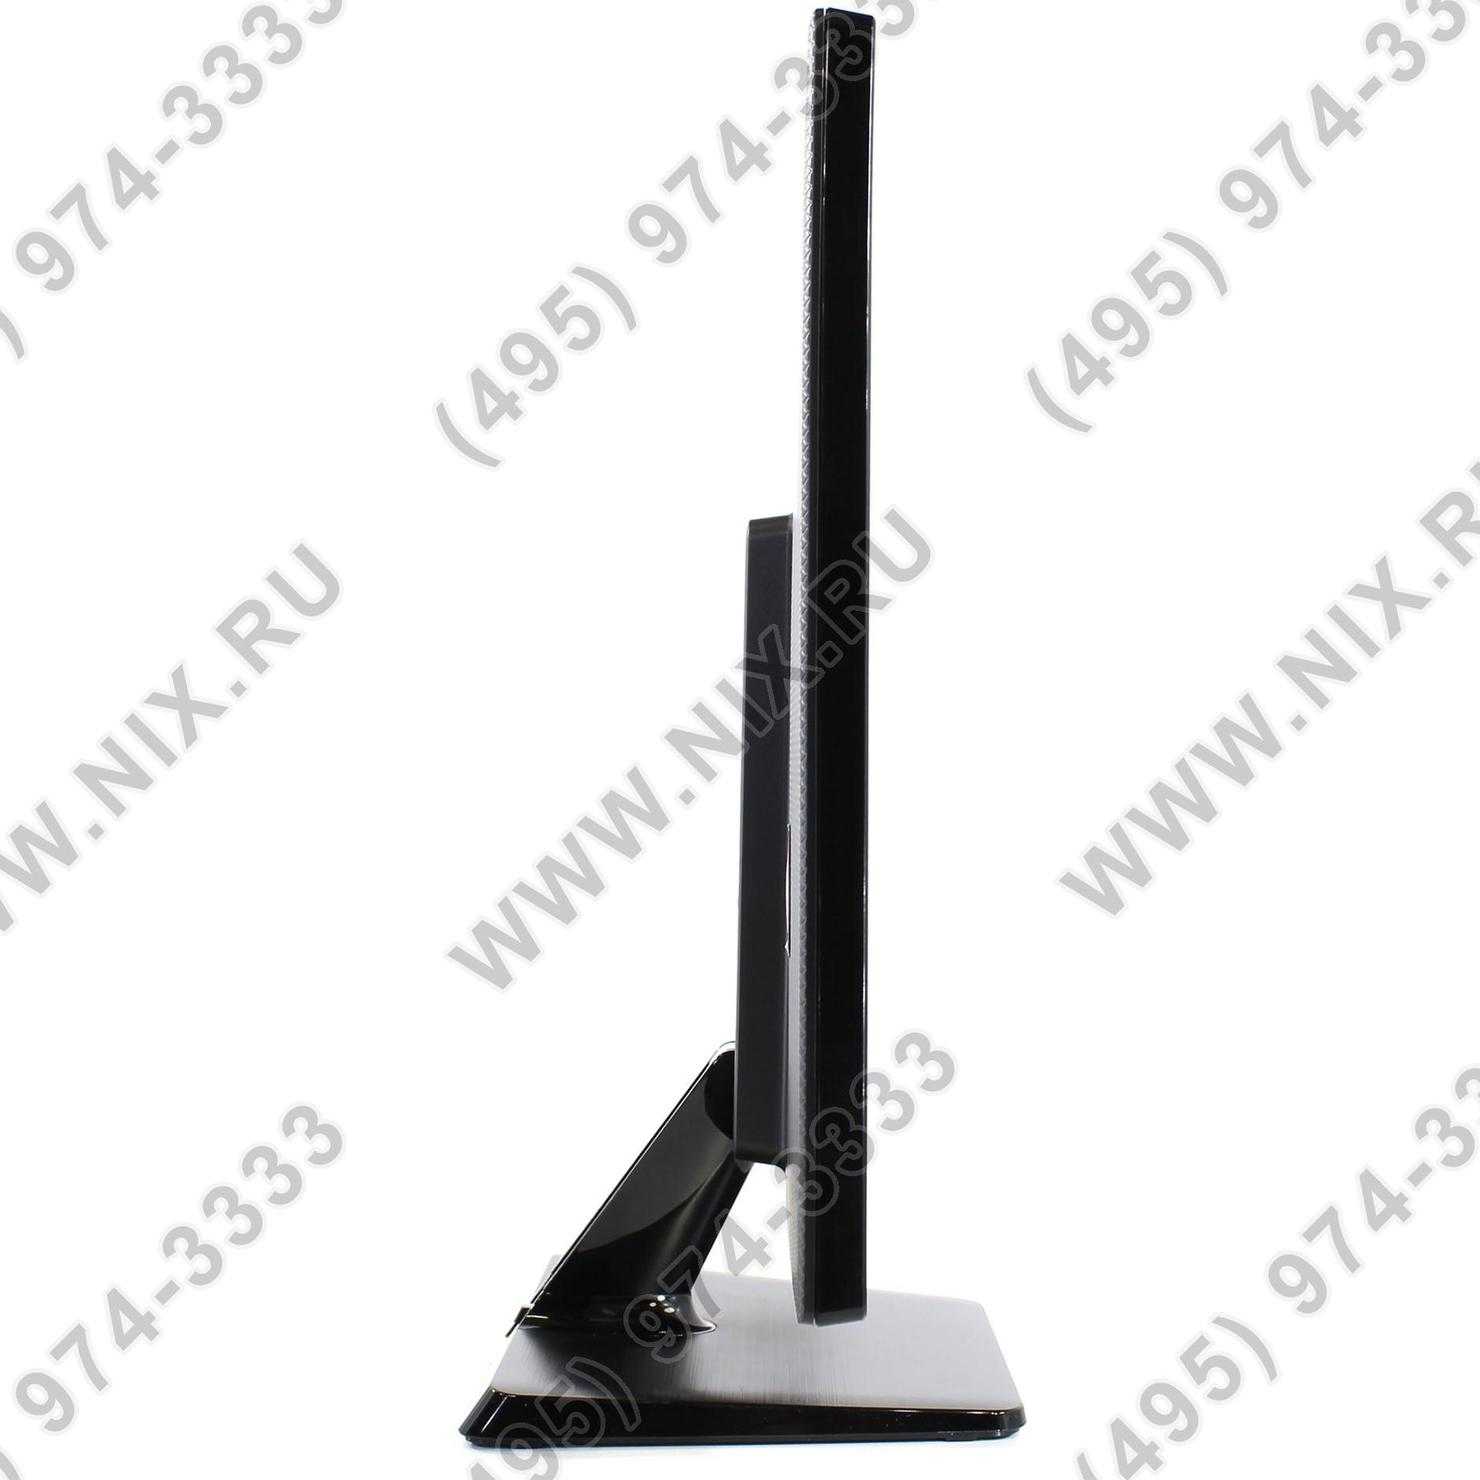 Lg e2342t-bn (черный) - купить , скидки, цена, отзывы, обзор, характеристики - мониторы